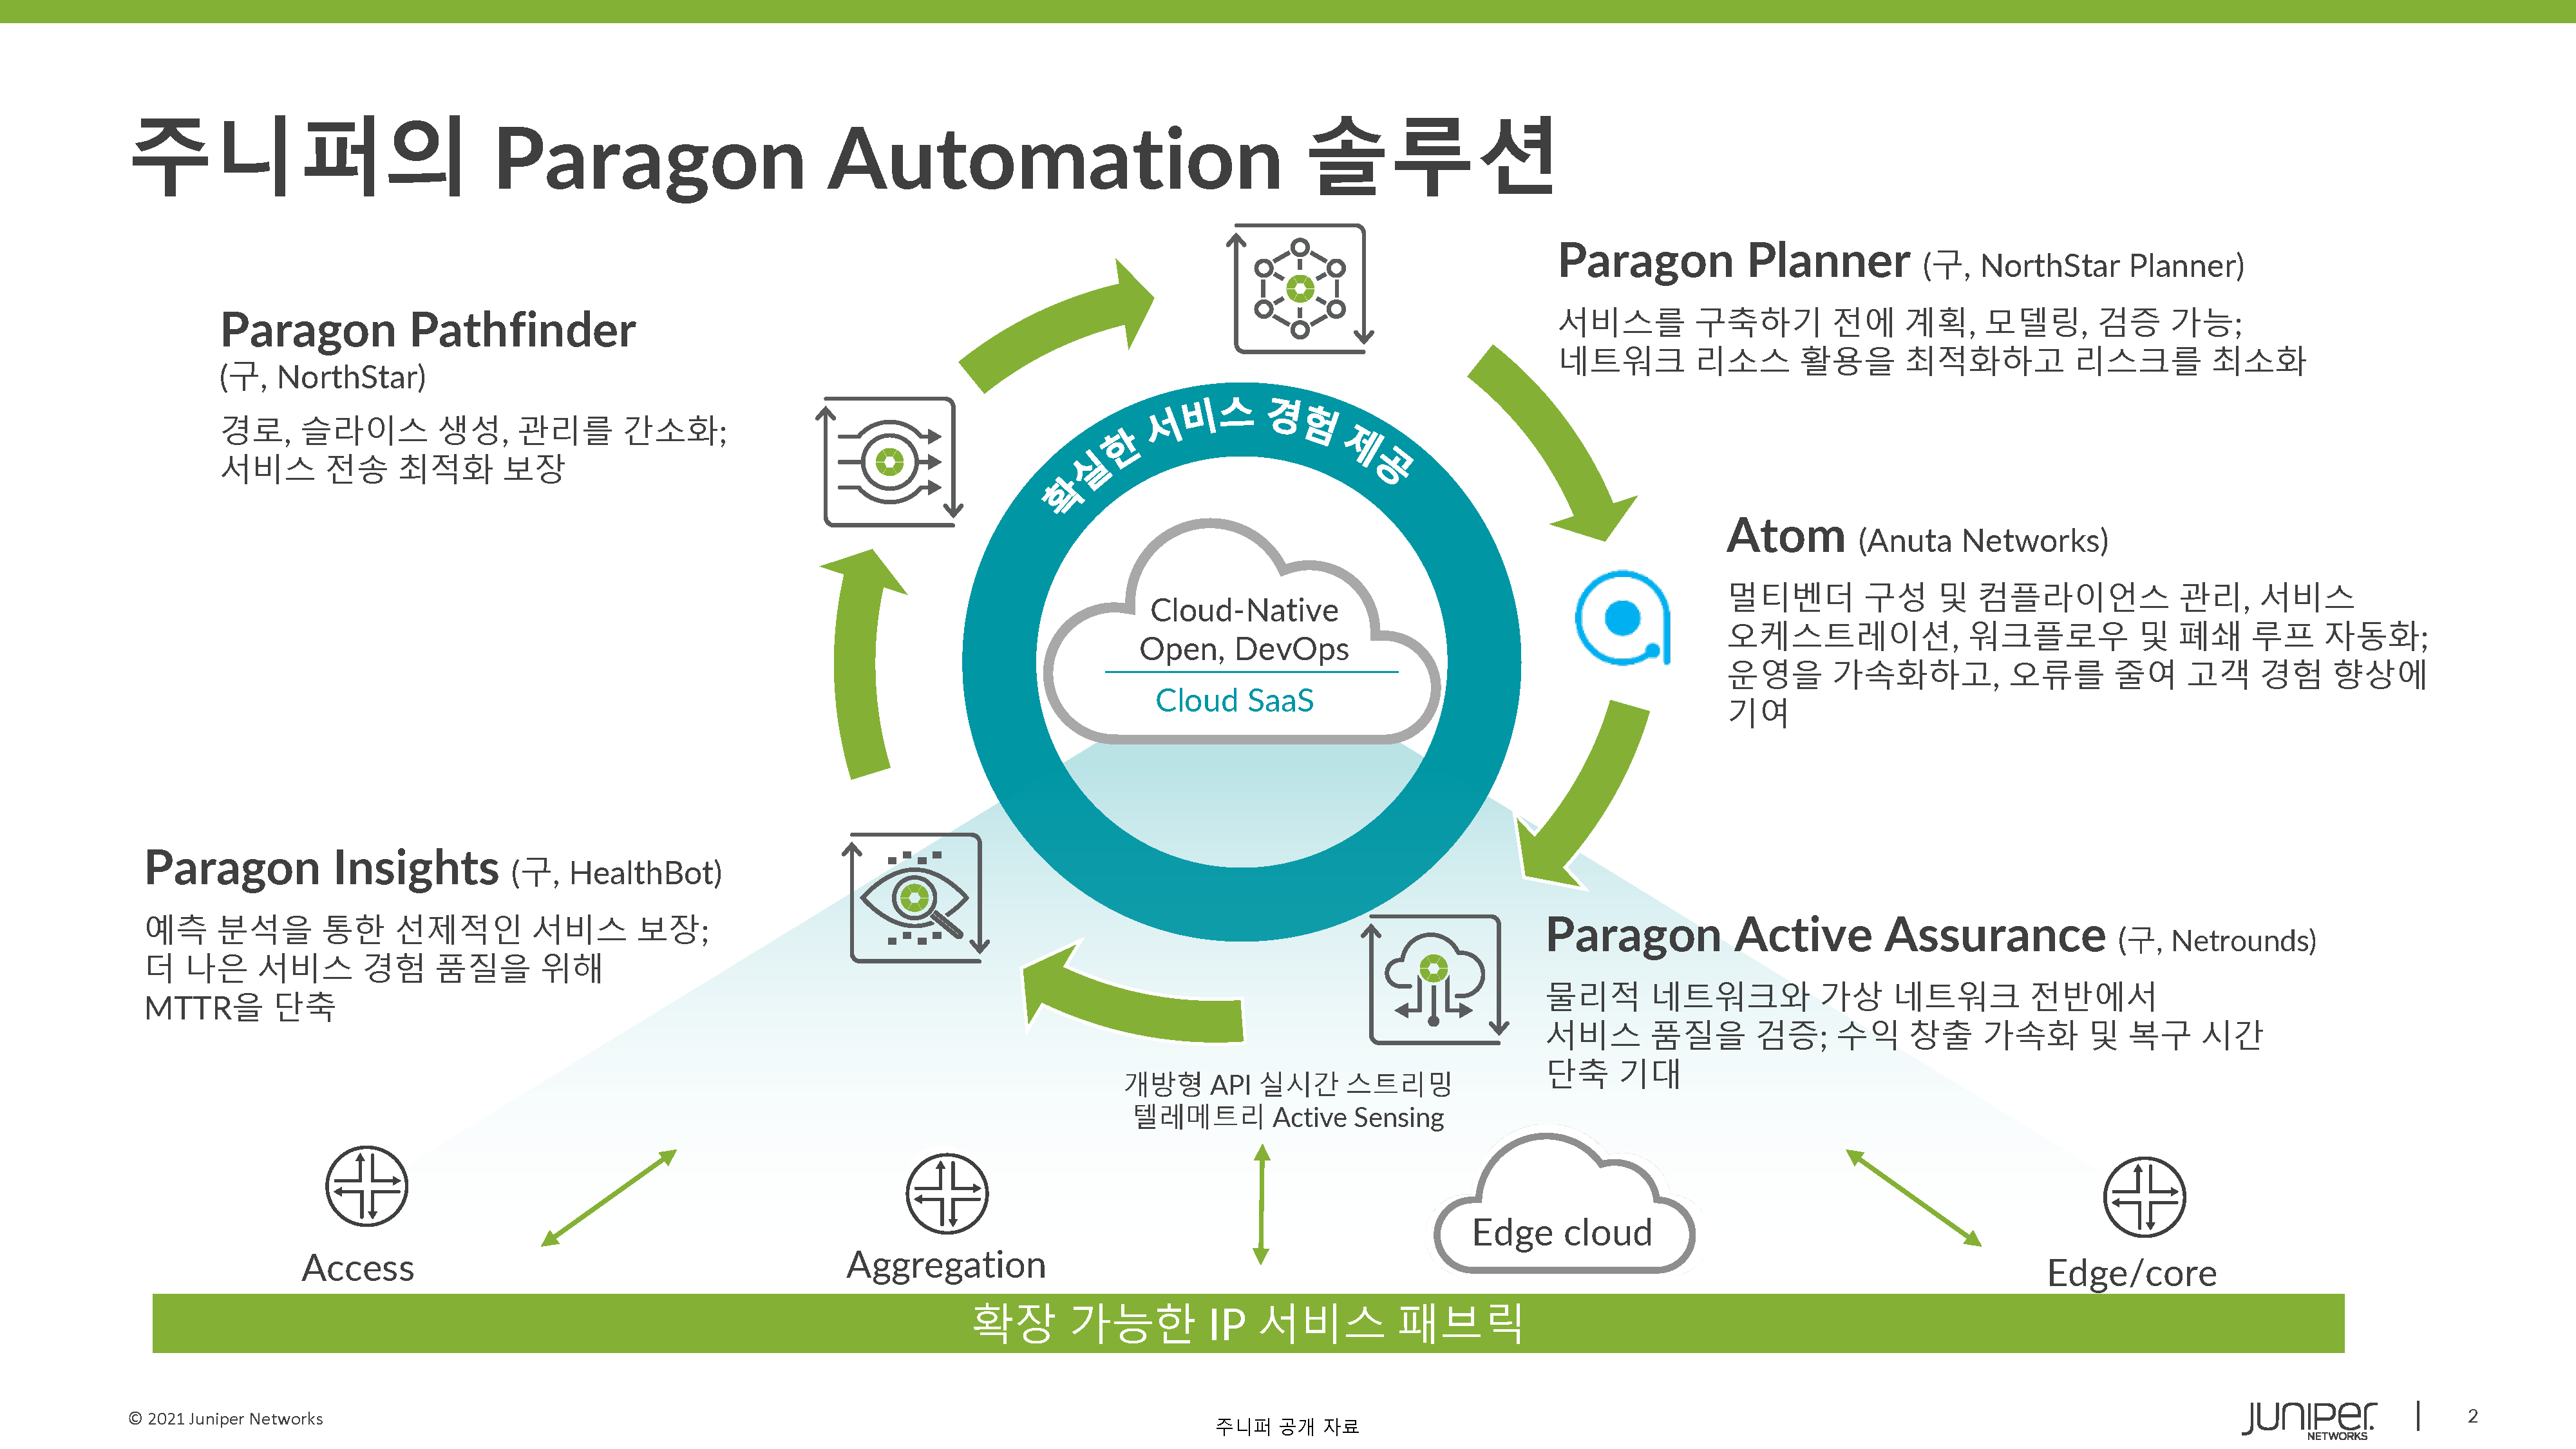 Juniper Paragon Automation을 통한 경험 최우선 네트워킹 구현